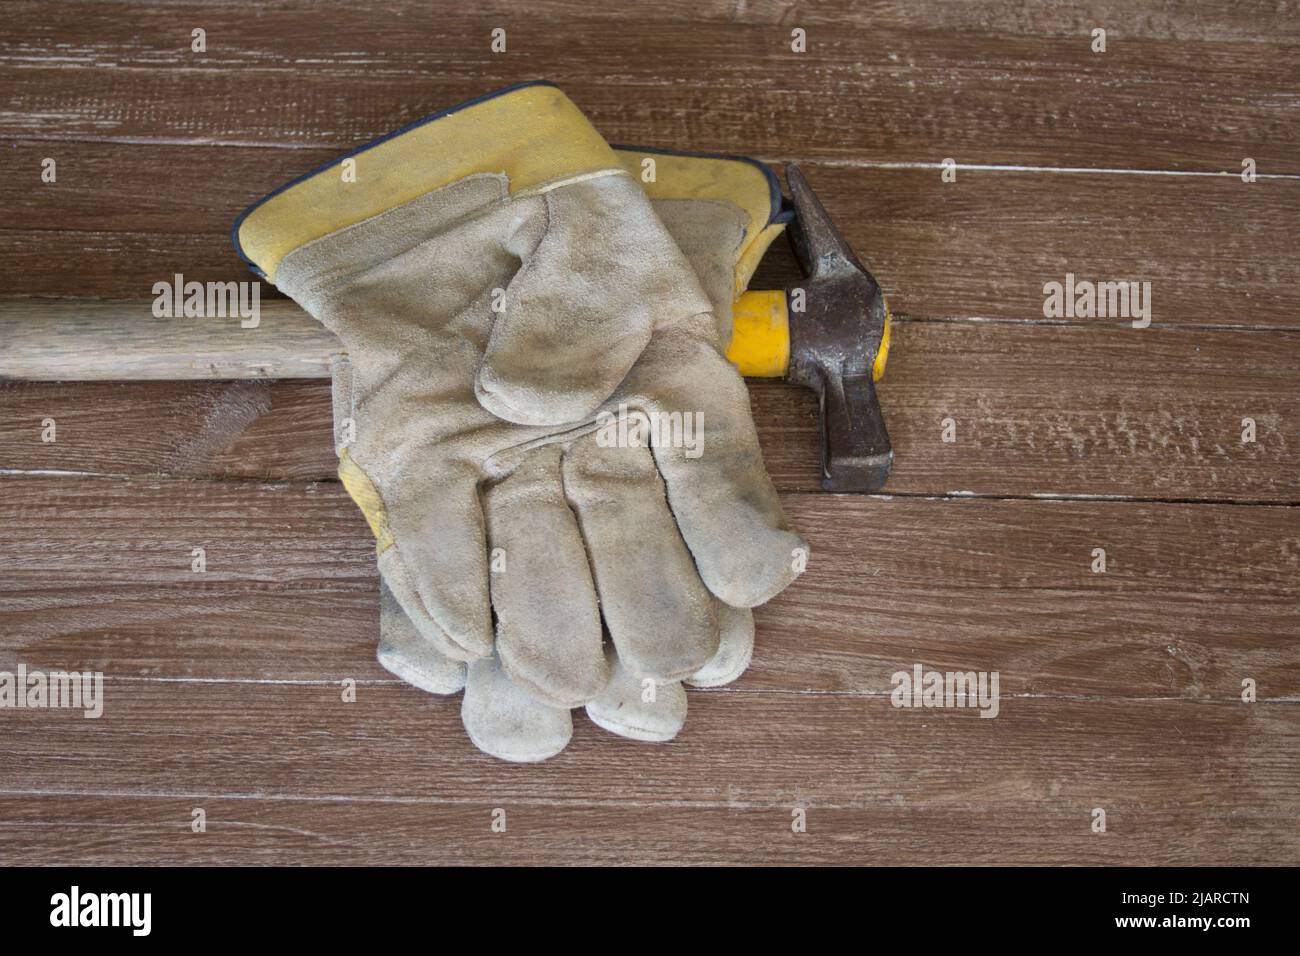 Image d'une paire de gants de travail et d'un marteau de maçon. Représentation des accidents au travail Banque D'Images